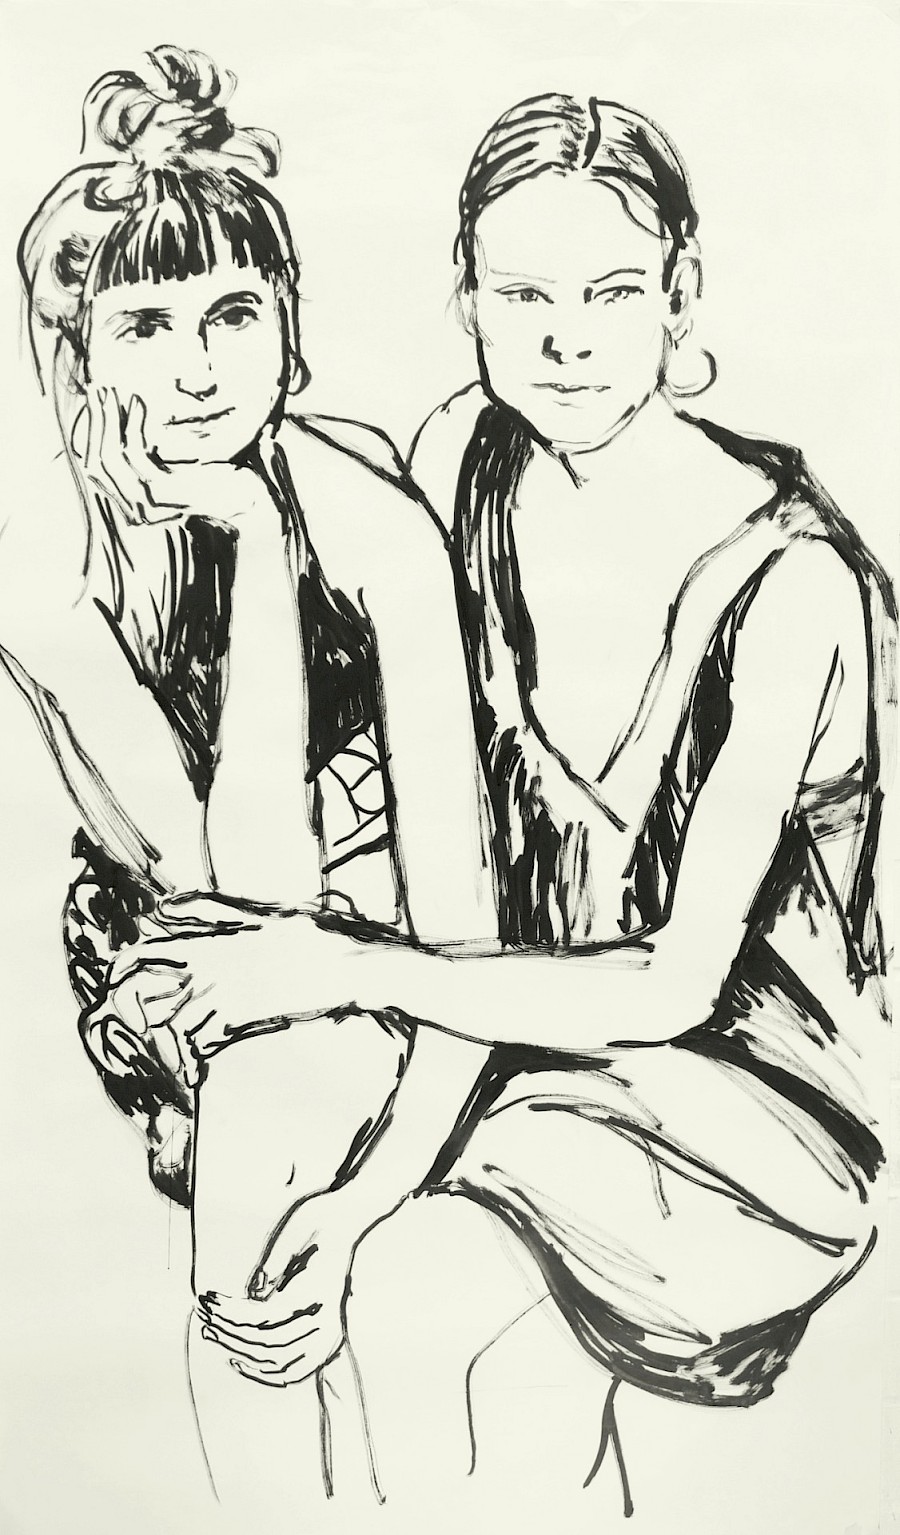 Alicja & Verena
175 x 100 cm
Tusche auf Papier
2020